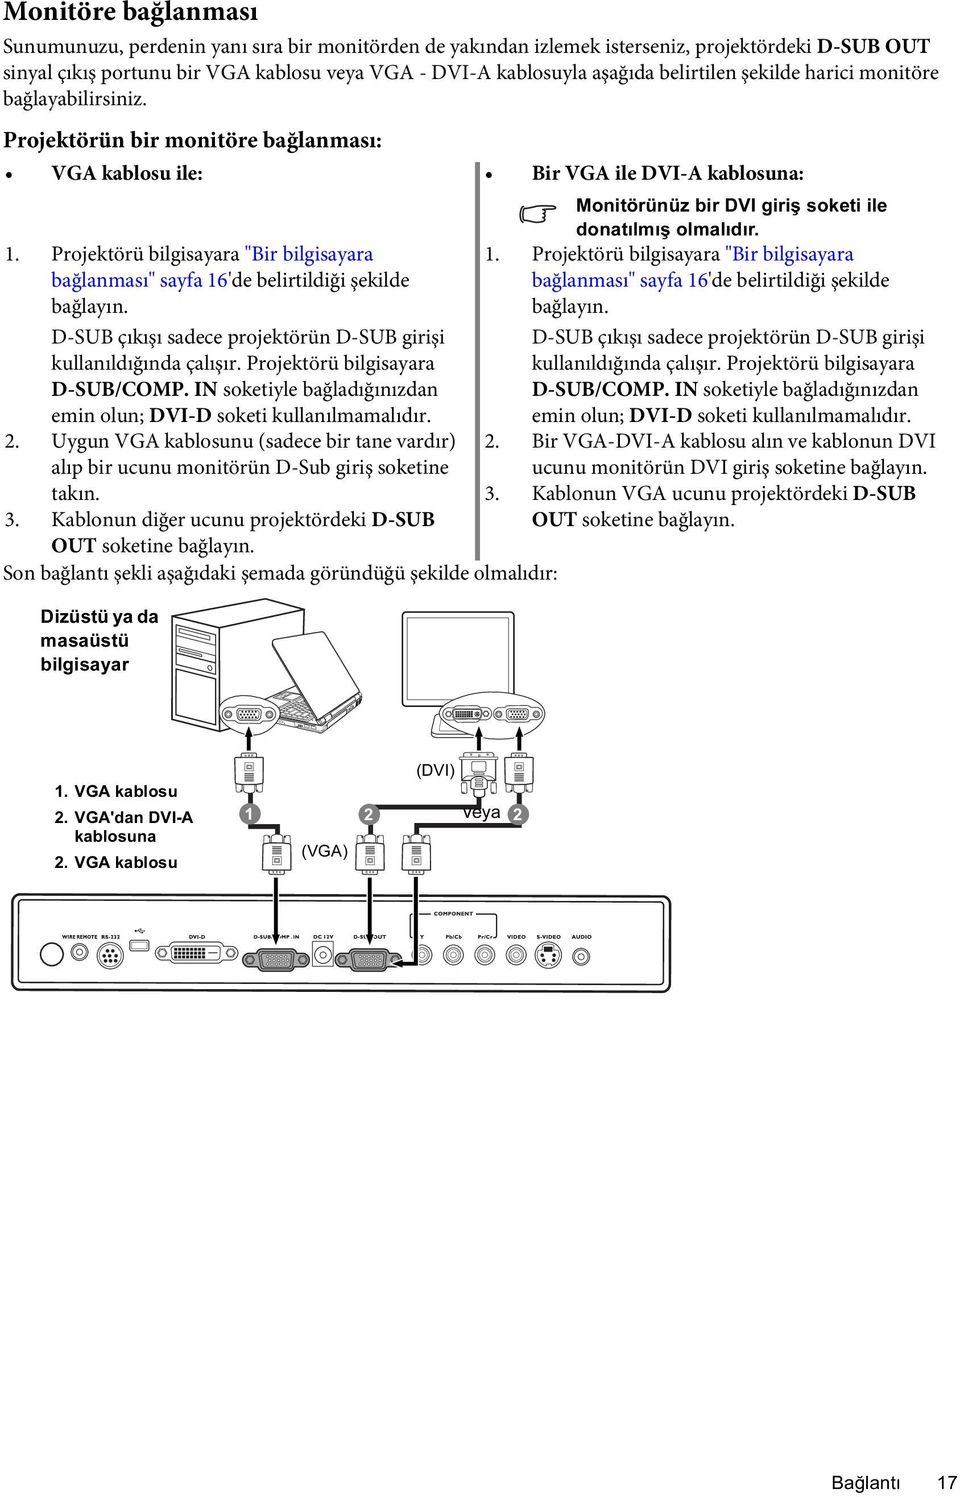 Projektörü bilgisayara "Bir bilgisayara 1. Projektörü bilgisayara "Bir bilgisayara bağlanması" sayfa 16'de belirtildiği şekilde bağlanması" sayfa 16'de belirtildiği şekilde bağlayın.